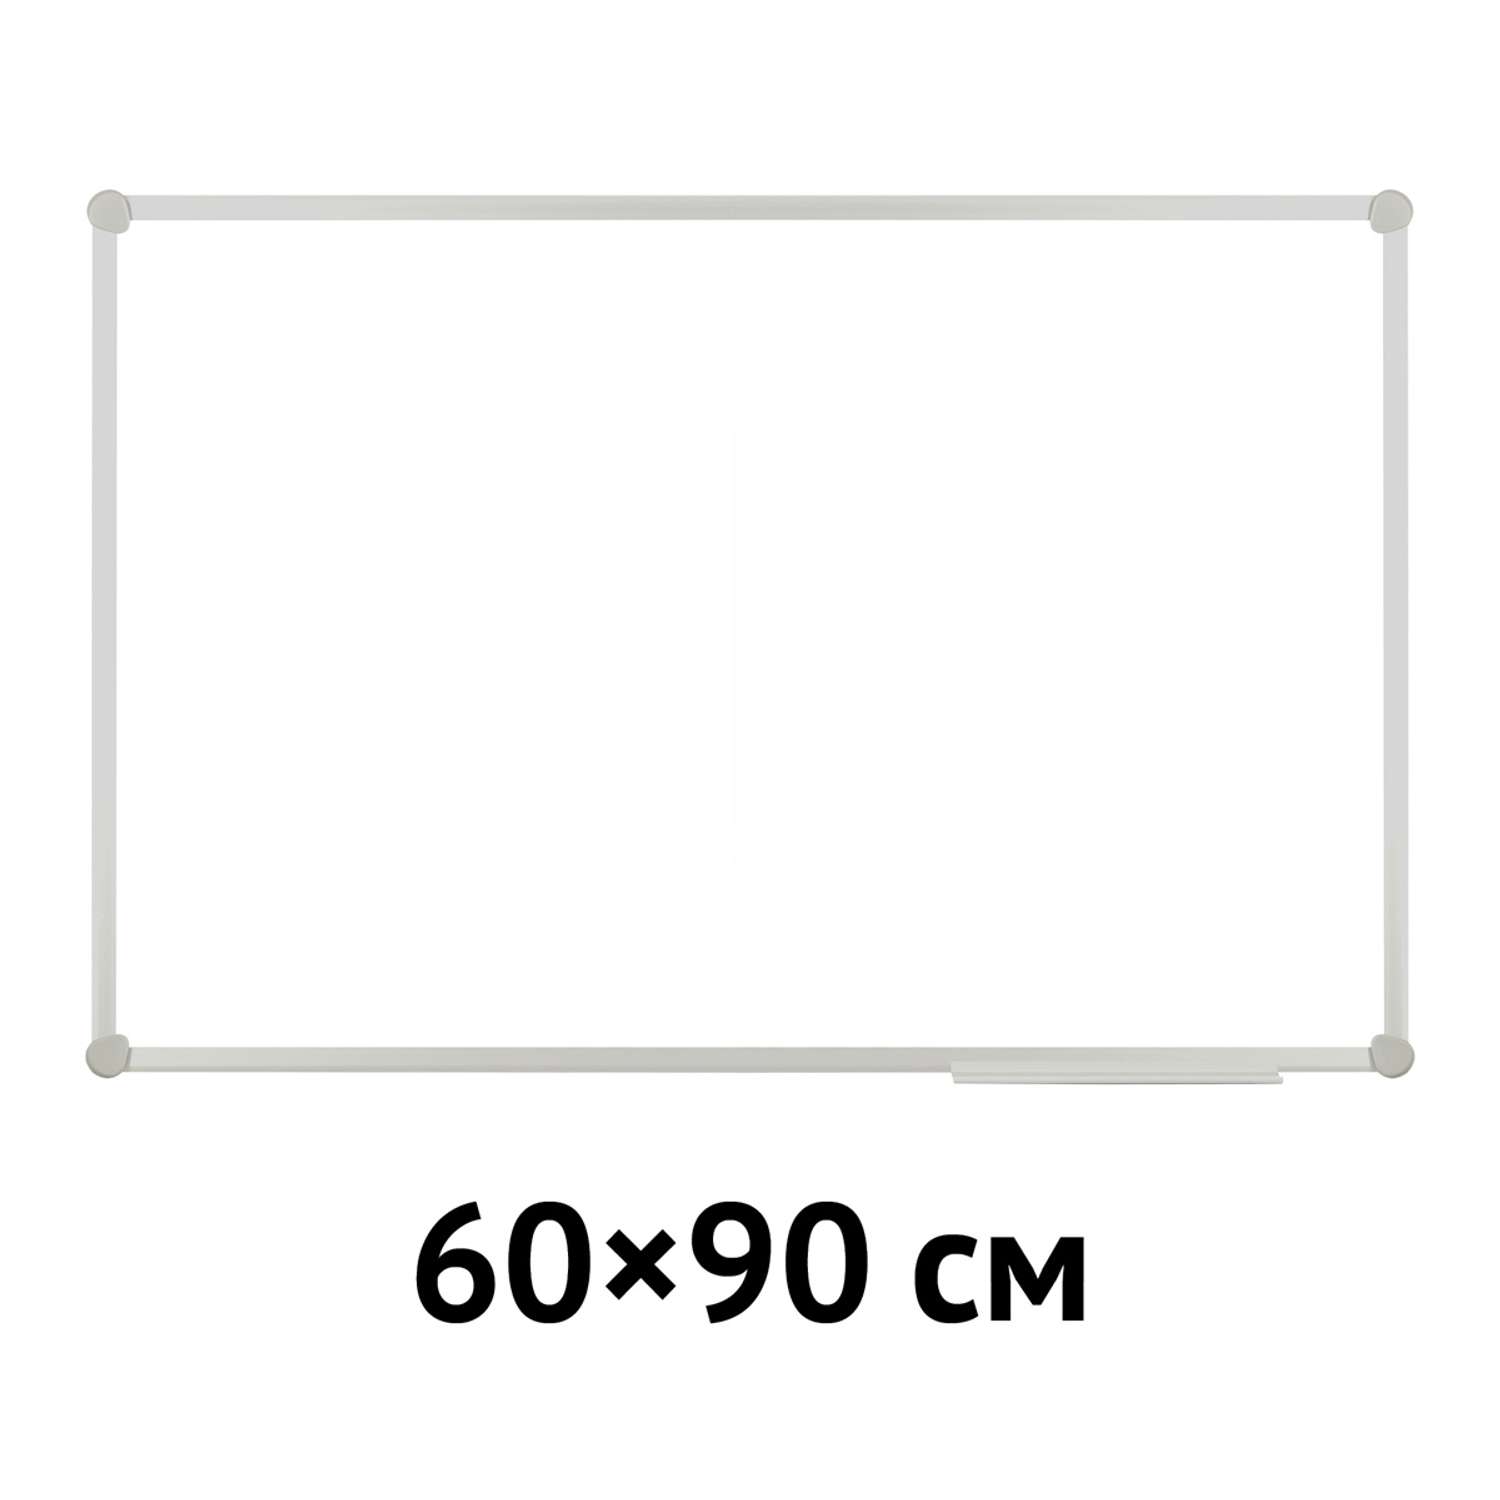 Доска OfficeSpace магнитно-маркерная 60 на 90 см рамка ПВХ - фото 3